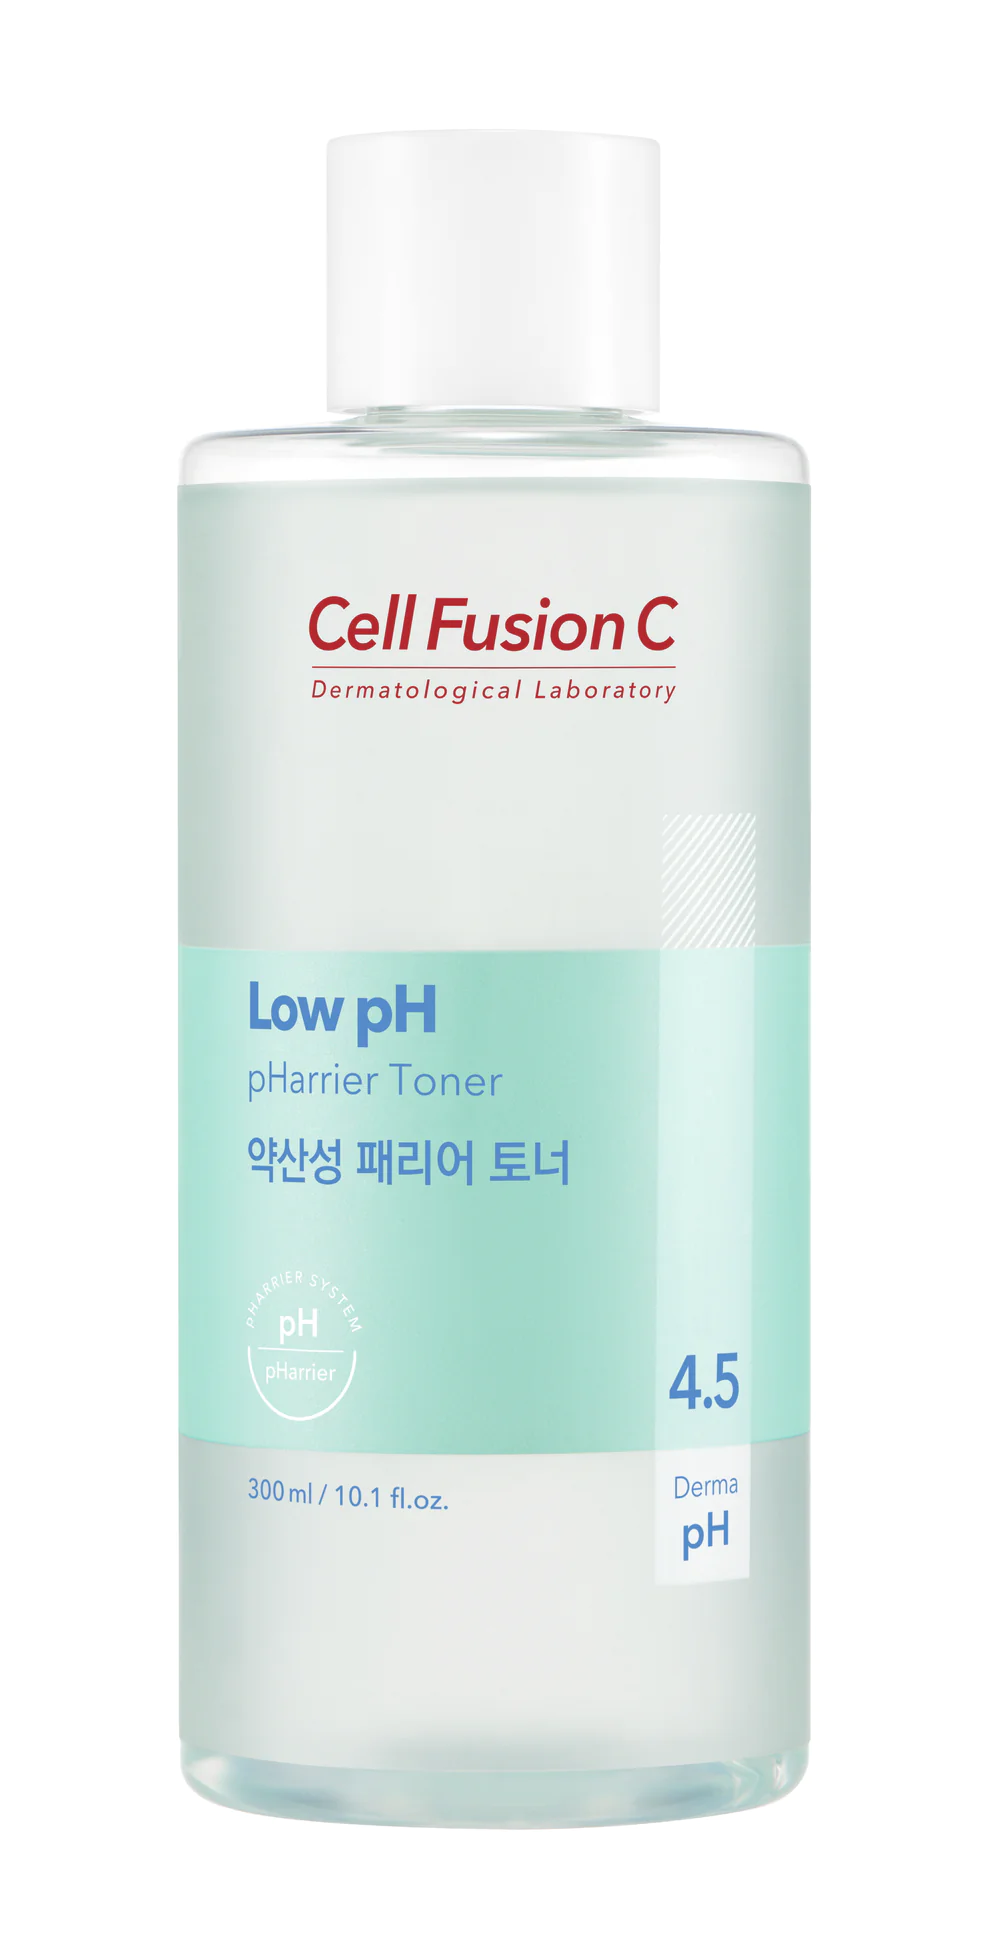 [Cell Fusion C] Low pH pHarrier Toner